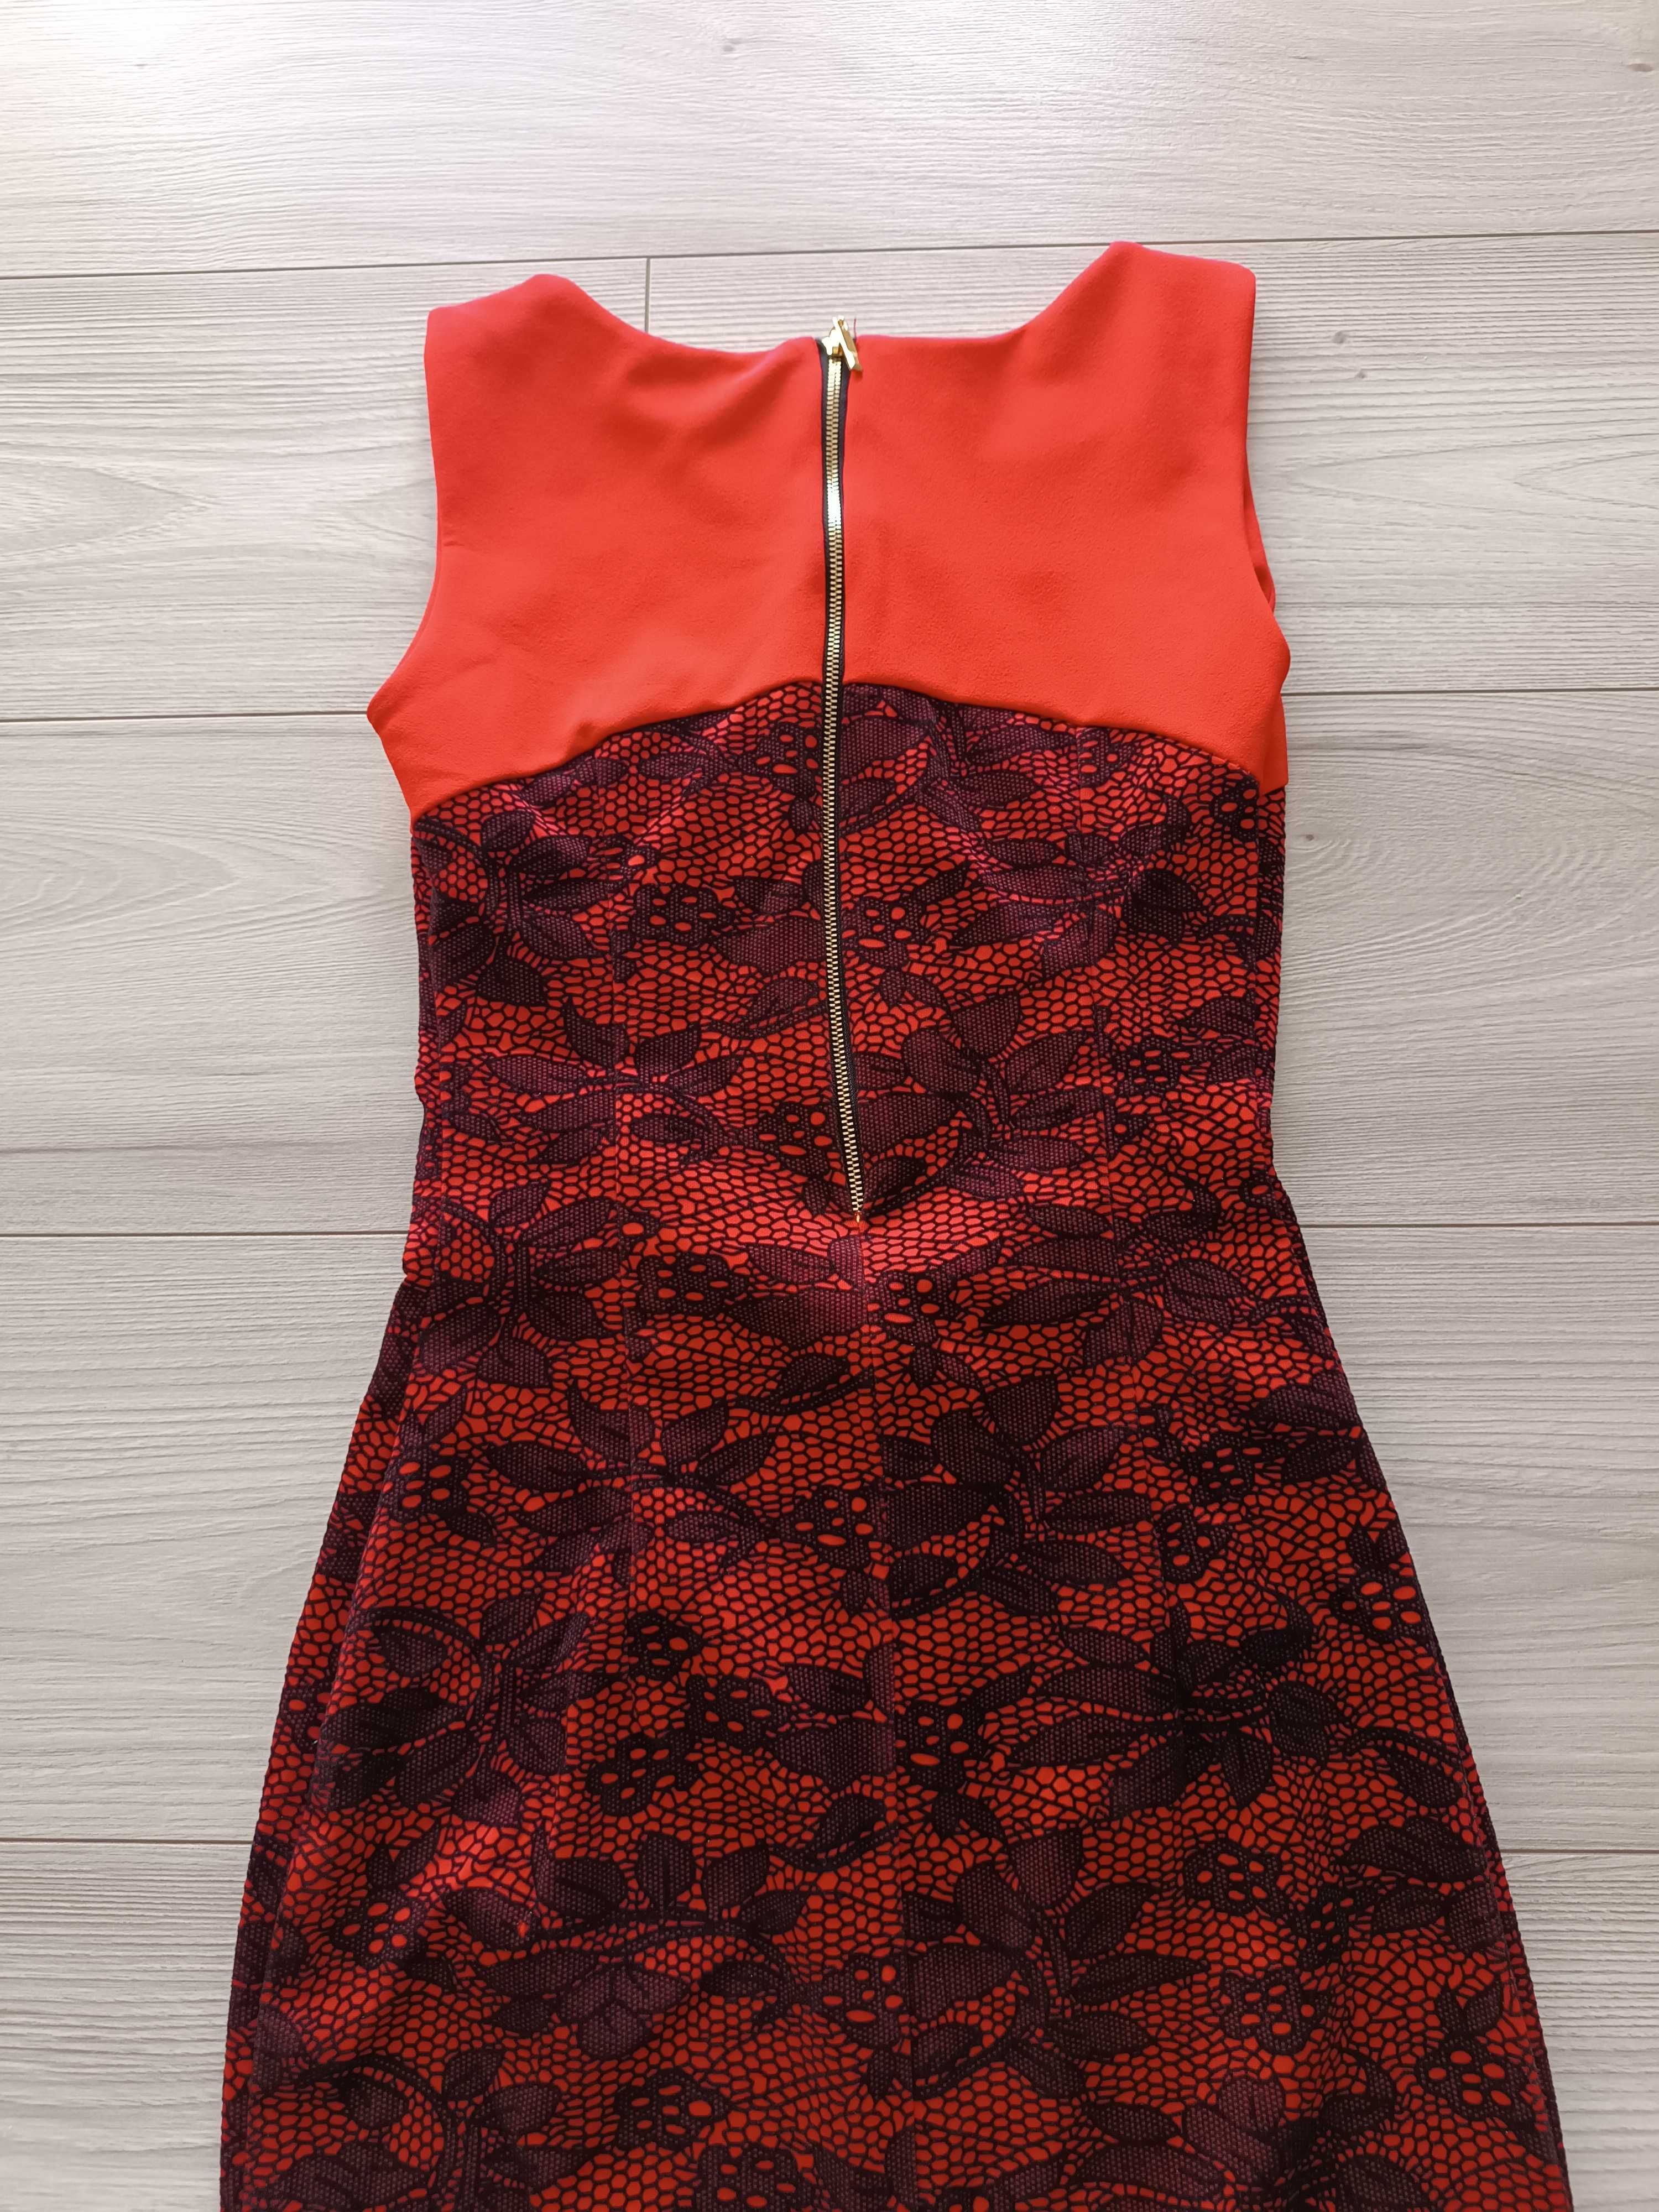 Sukienka damska czerwona-czarna elegancka krótki rękaw używana, XS